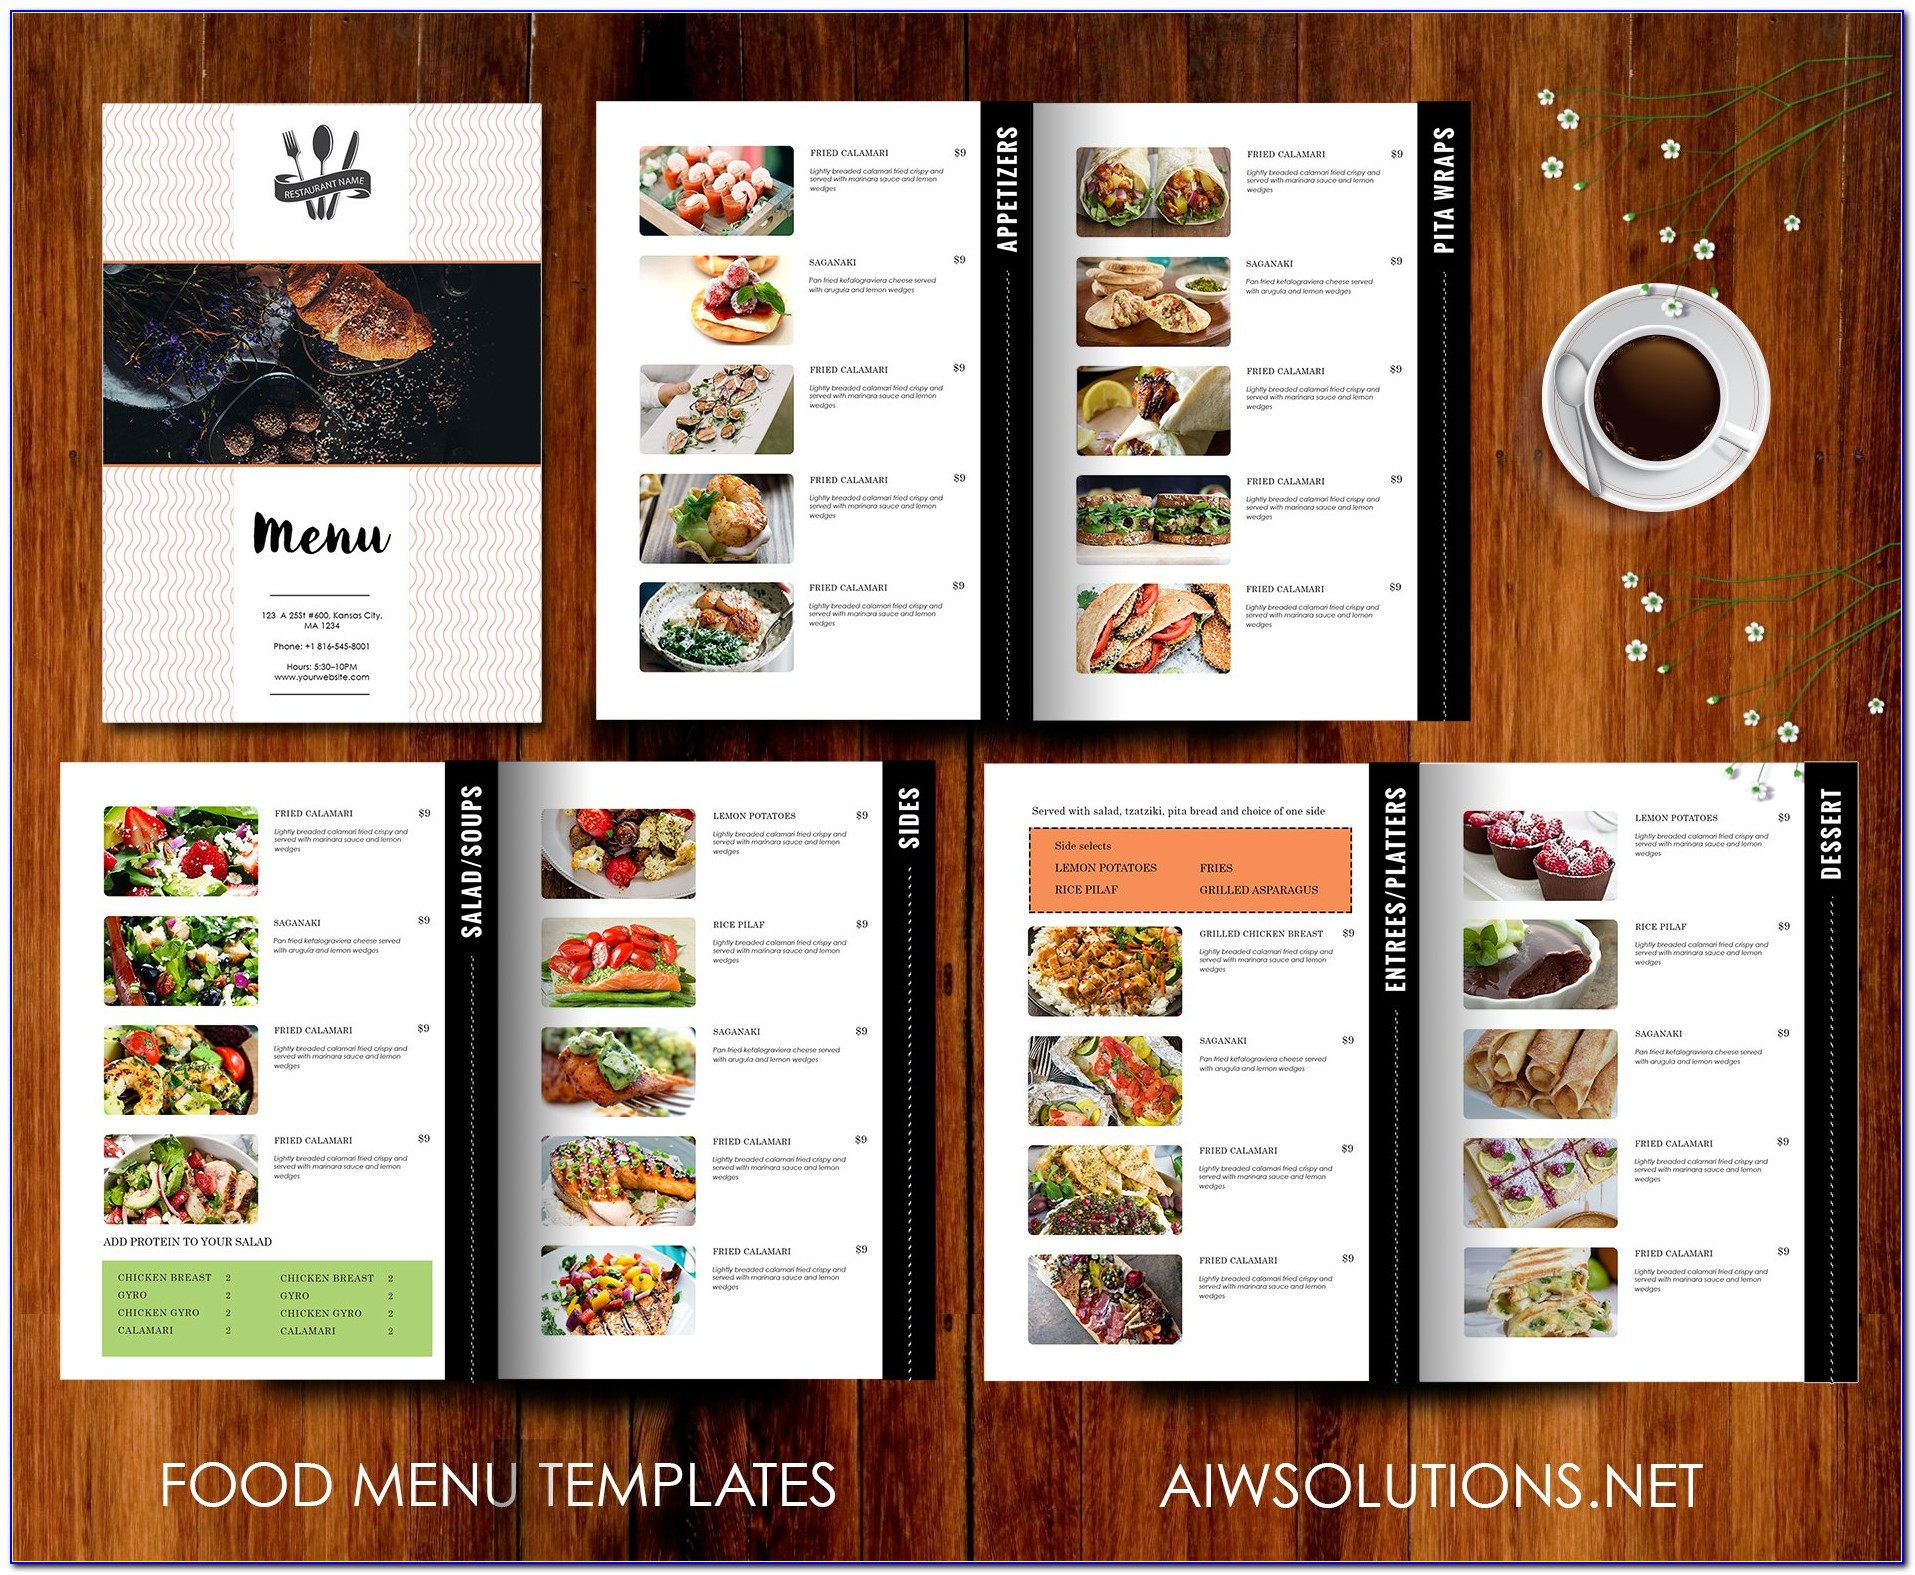 Food Menu Design Template Free Download